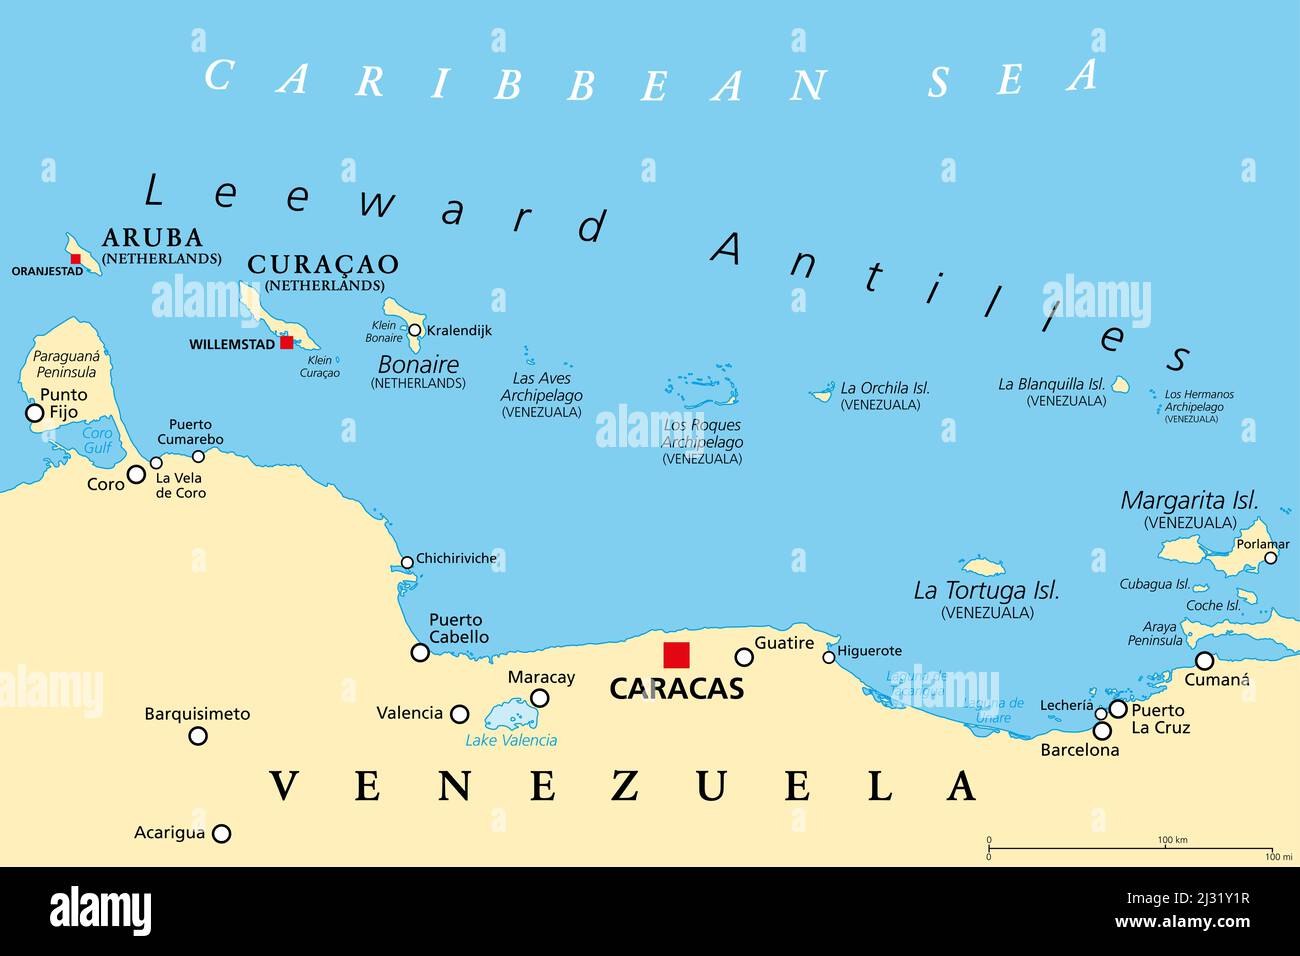 Mappa politica delle Antille sottovento. Catena di isole nei Caraibi. Da Aruba, Curacao e Bonaire a la Tortuga e Margarita Island. Foto Stock